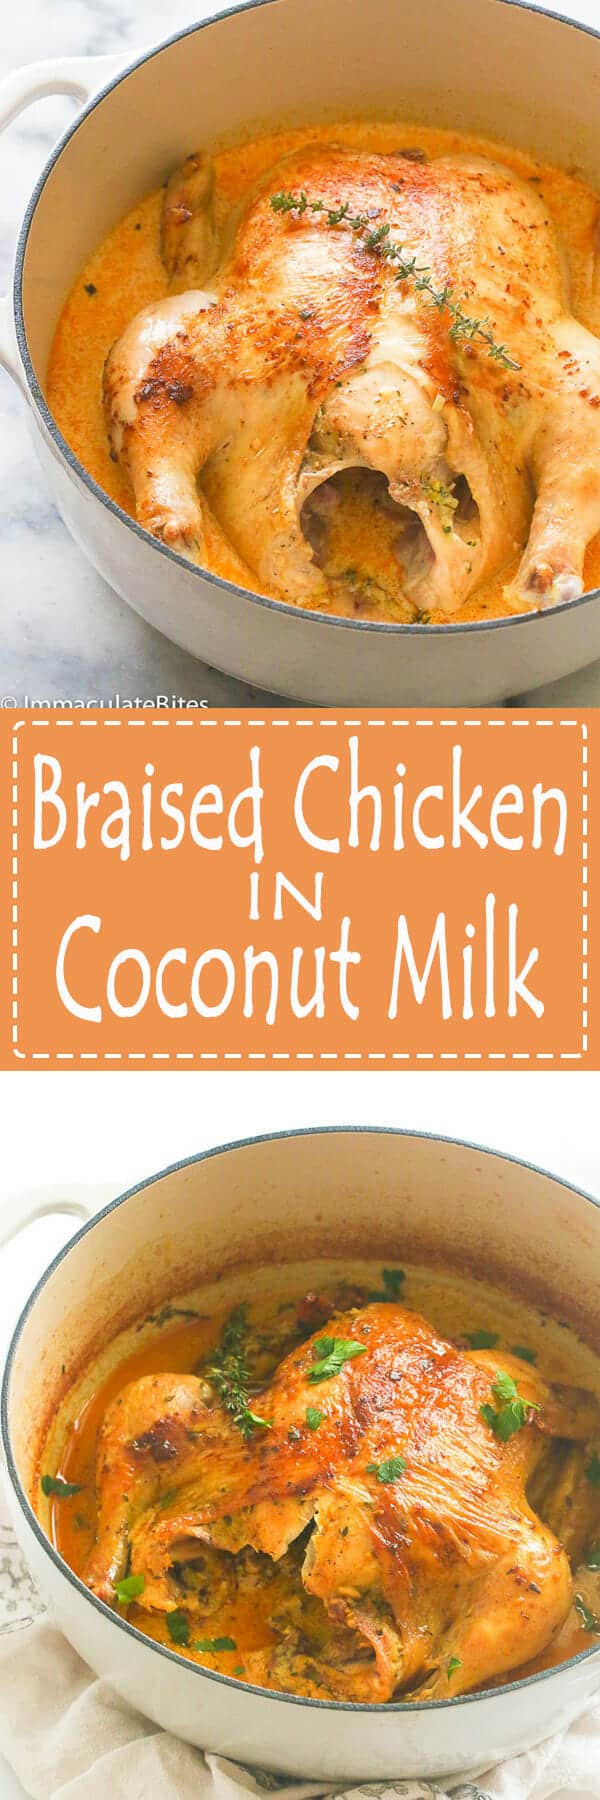 Braised Chicken in Coconut Milk